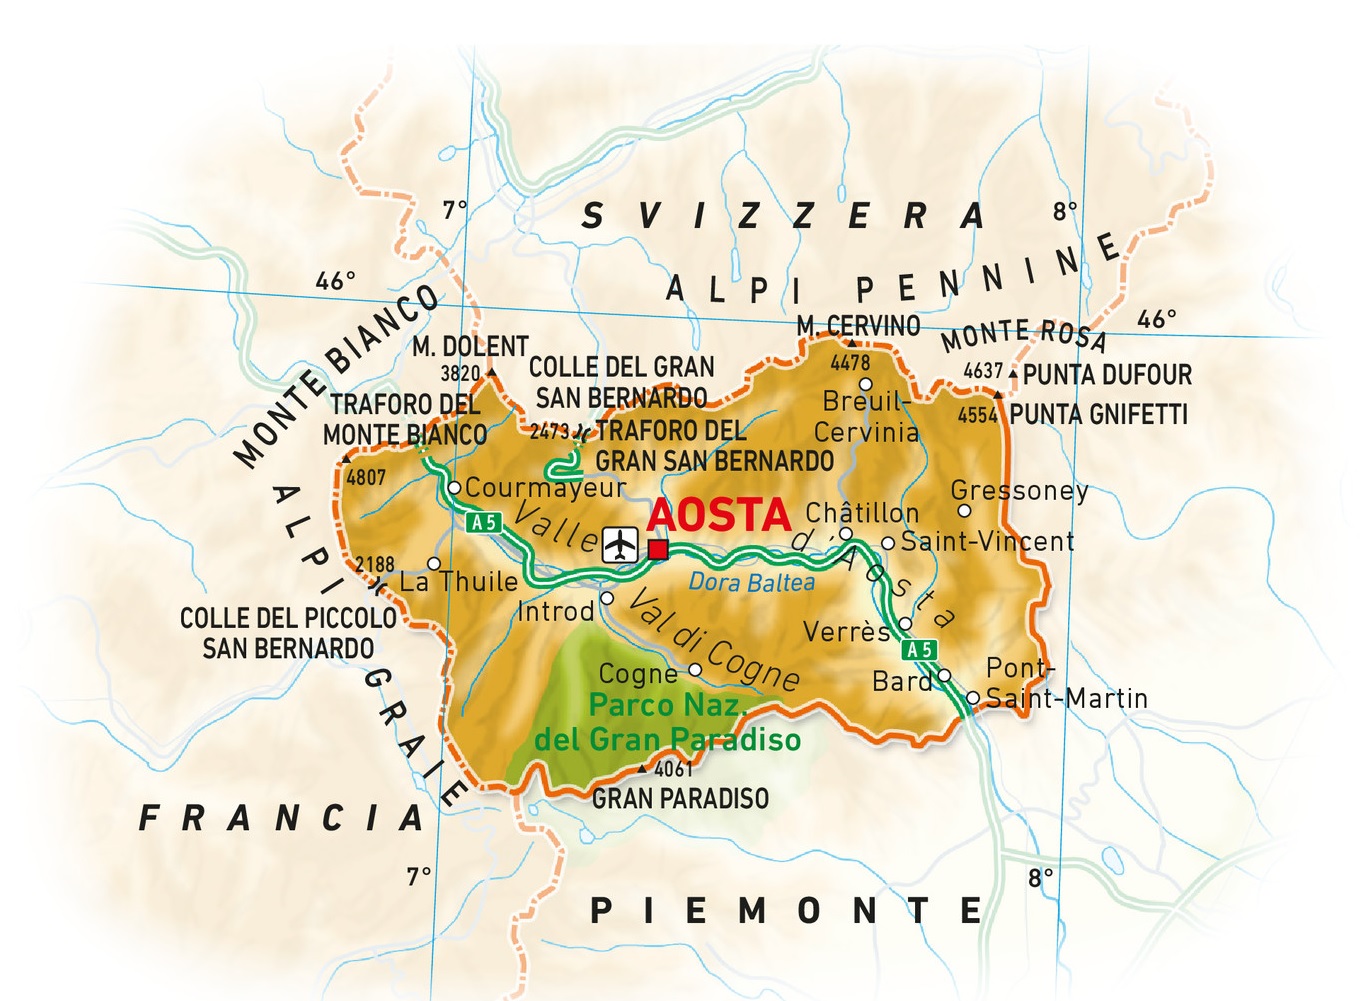 Valle d'Aosta: Un gioiello alpino incantato da scoprire L'articolo sulla Valle d'Aosta ti guida attraverso le meraviglie di questa regione alpina. Esplora le maestose montagne, i castelli medievali e i deliziosi piatti locali. Scopri la cultura, la storia e le attività all'aperto che rendono la Valle d'Aosta un luogo unico da visitare. Immergiti nella bellezza naturale e nell'autentico spirito montano di questa affascinante regione italiana. - Immagini gratis